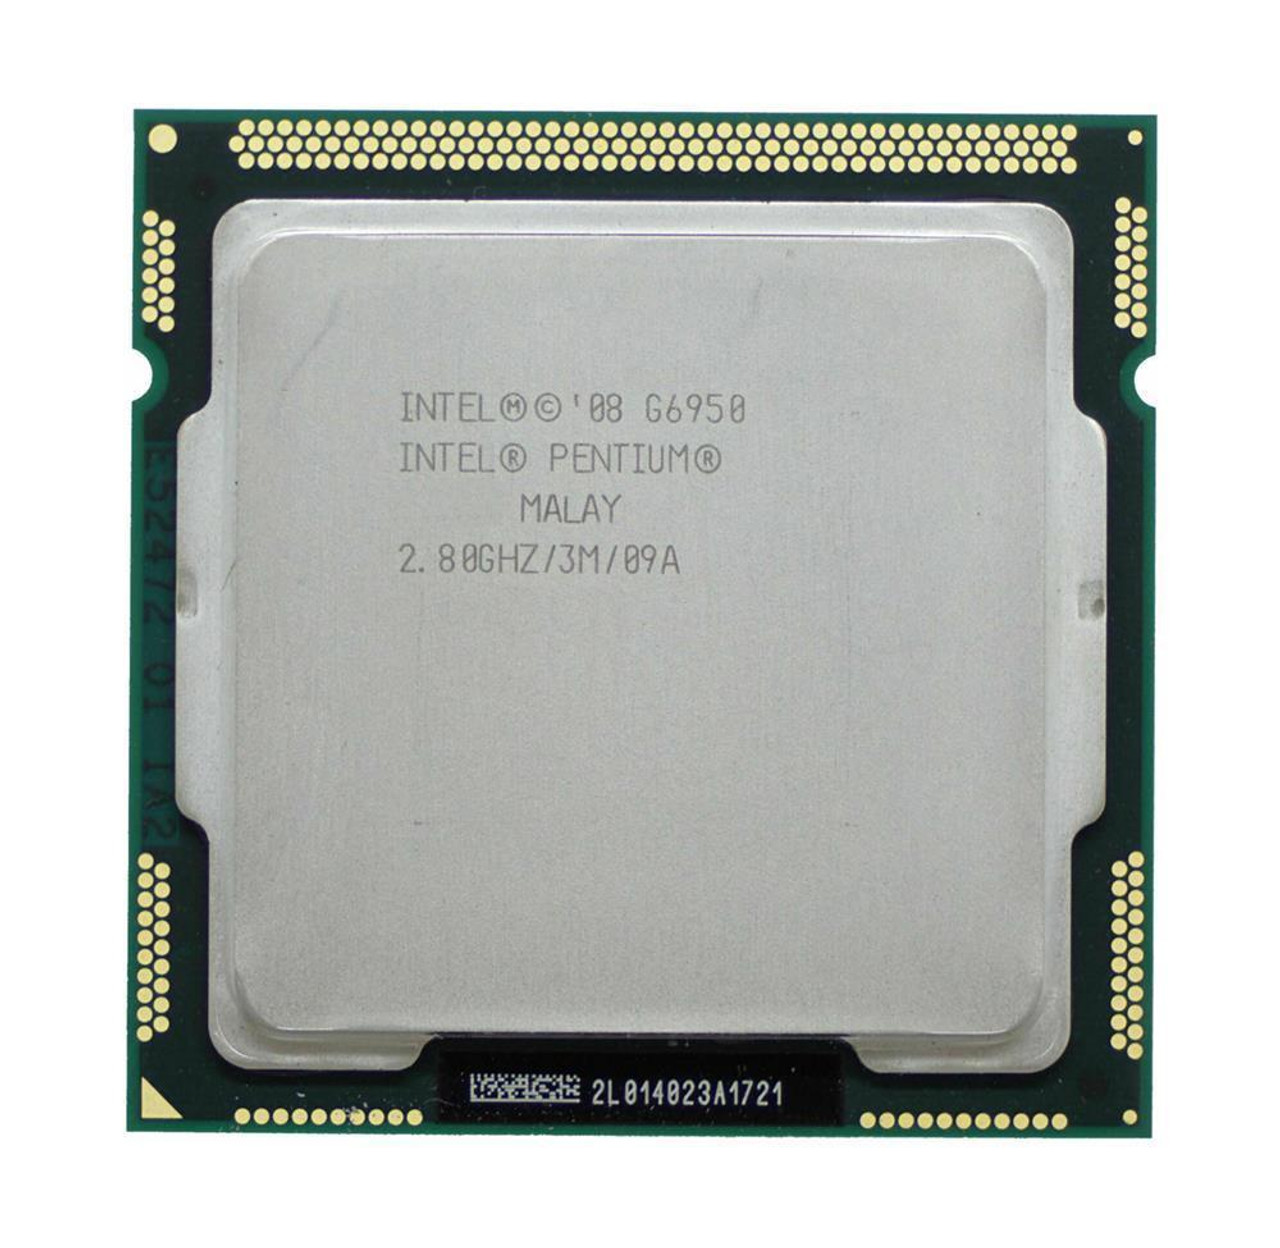 HPE 2.80GHz 2.50GT/s DMI 3MB L3 Cache Intel Pentium G6950 Dual-Core Processor Upgrade